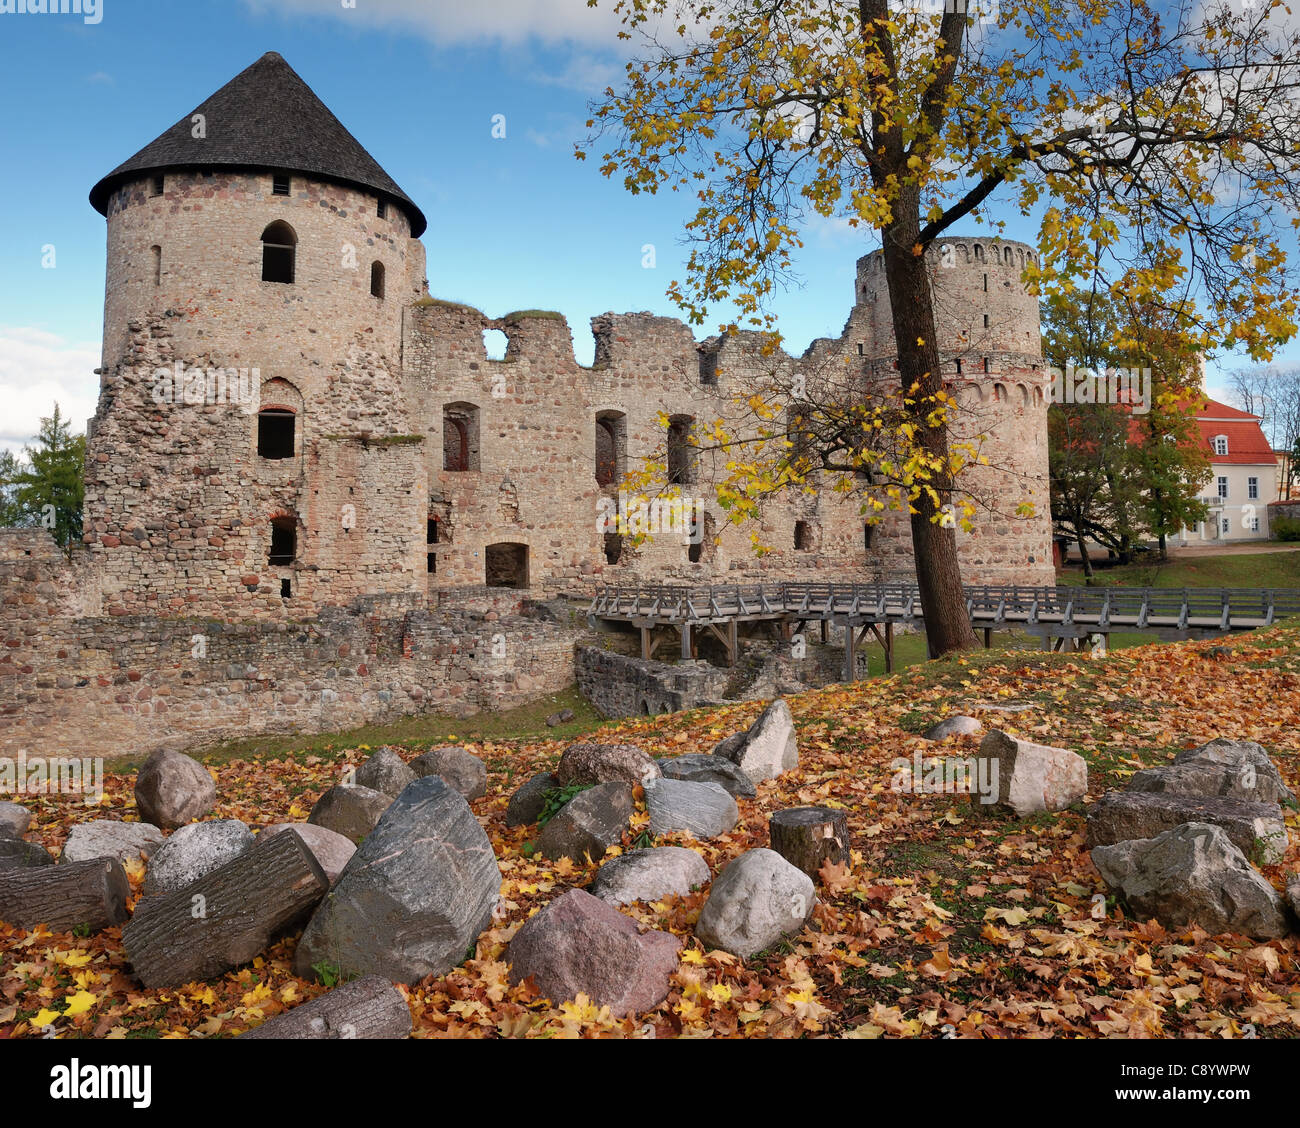 Le château de Cesis, la Lettonie. Début 13ème siècle. Banque D'Images